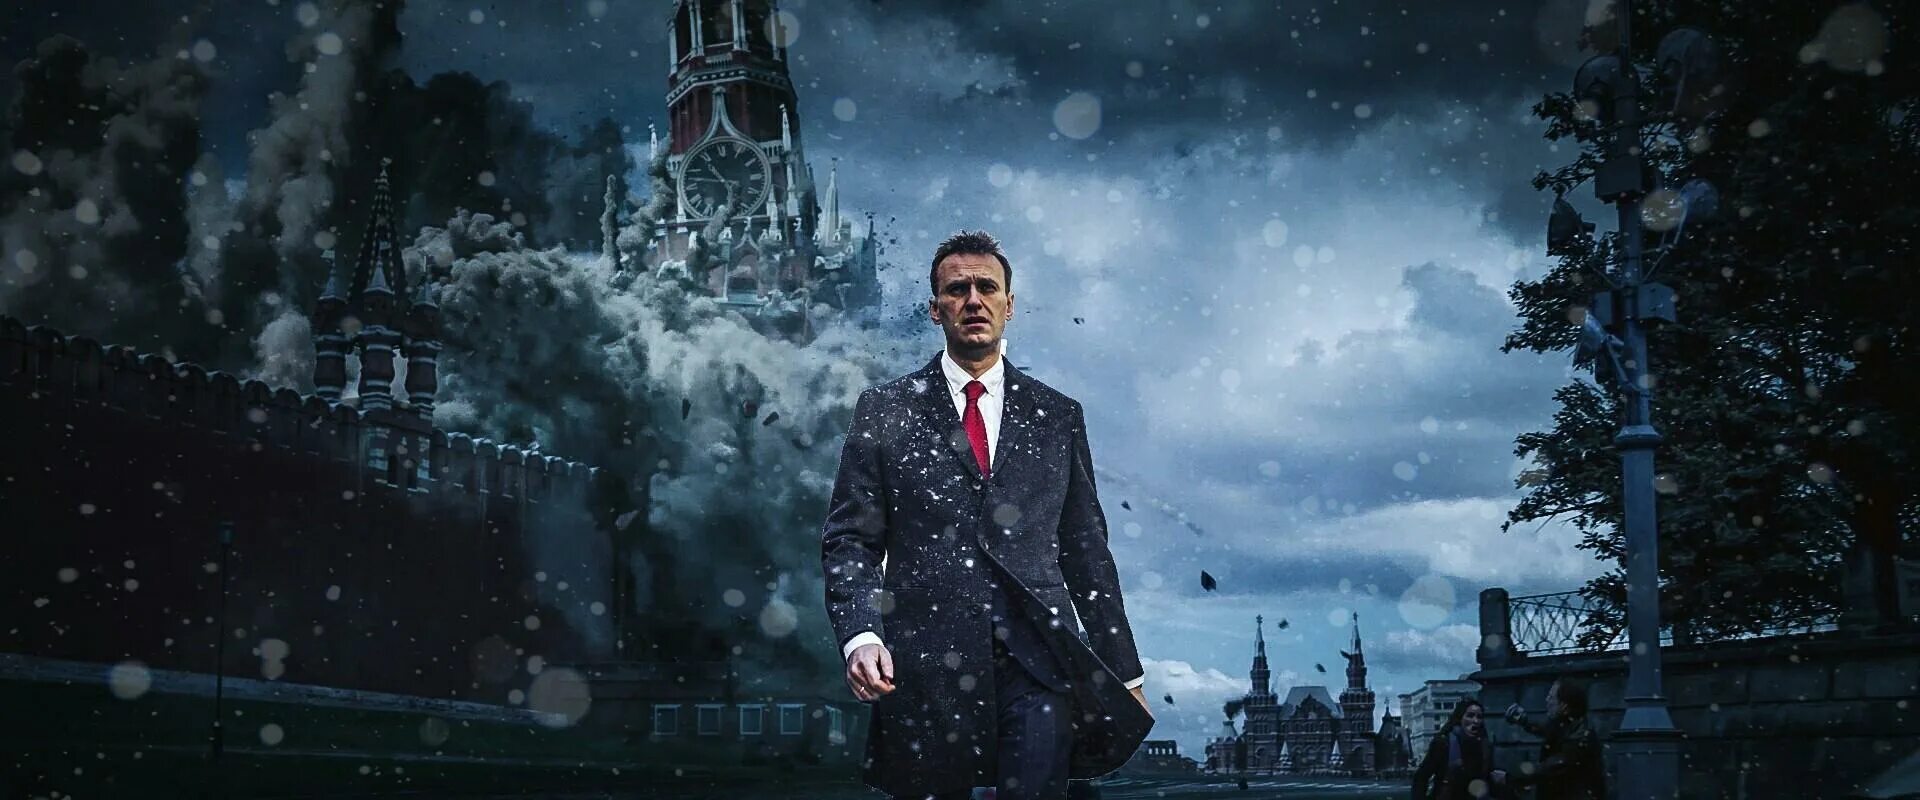 Навальный на фоне Кремля. Нейросеть на фоне Кремля. Человек у Кремля арт. Тесла на фоне Кремля. Remember navalniy